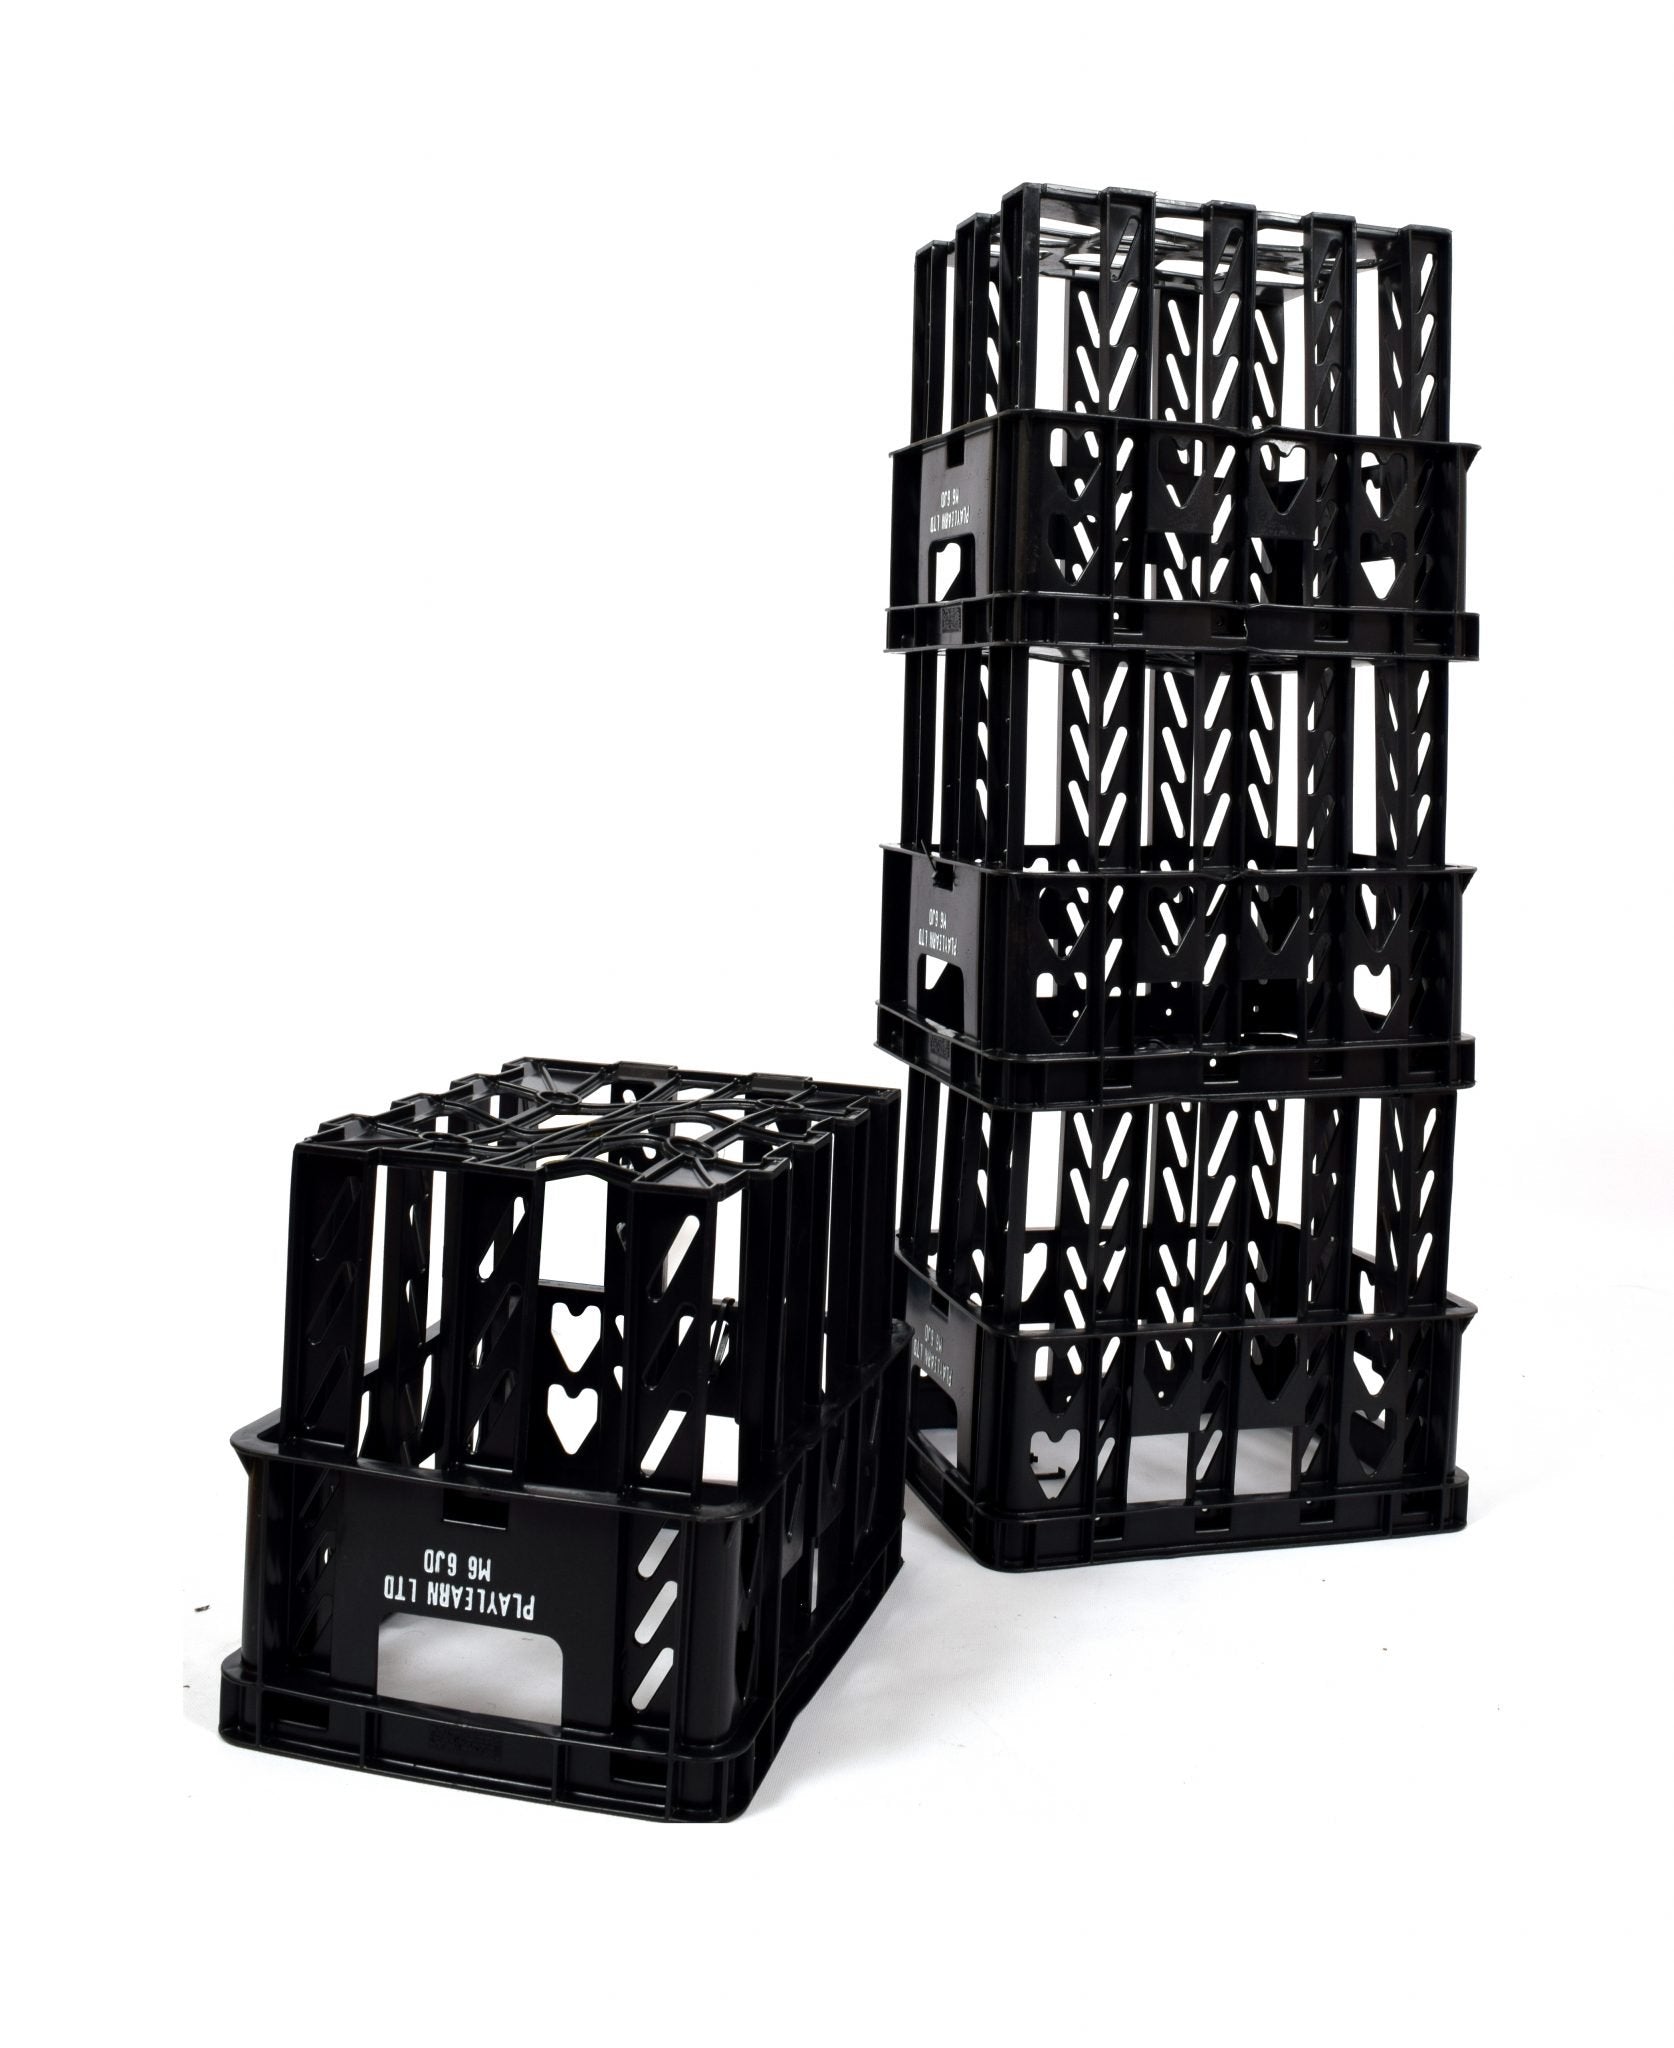 Milk Crates Black Quality Plastic – 36 x 28.5 x 67cm – The Future Image